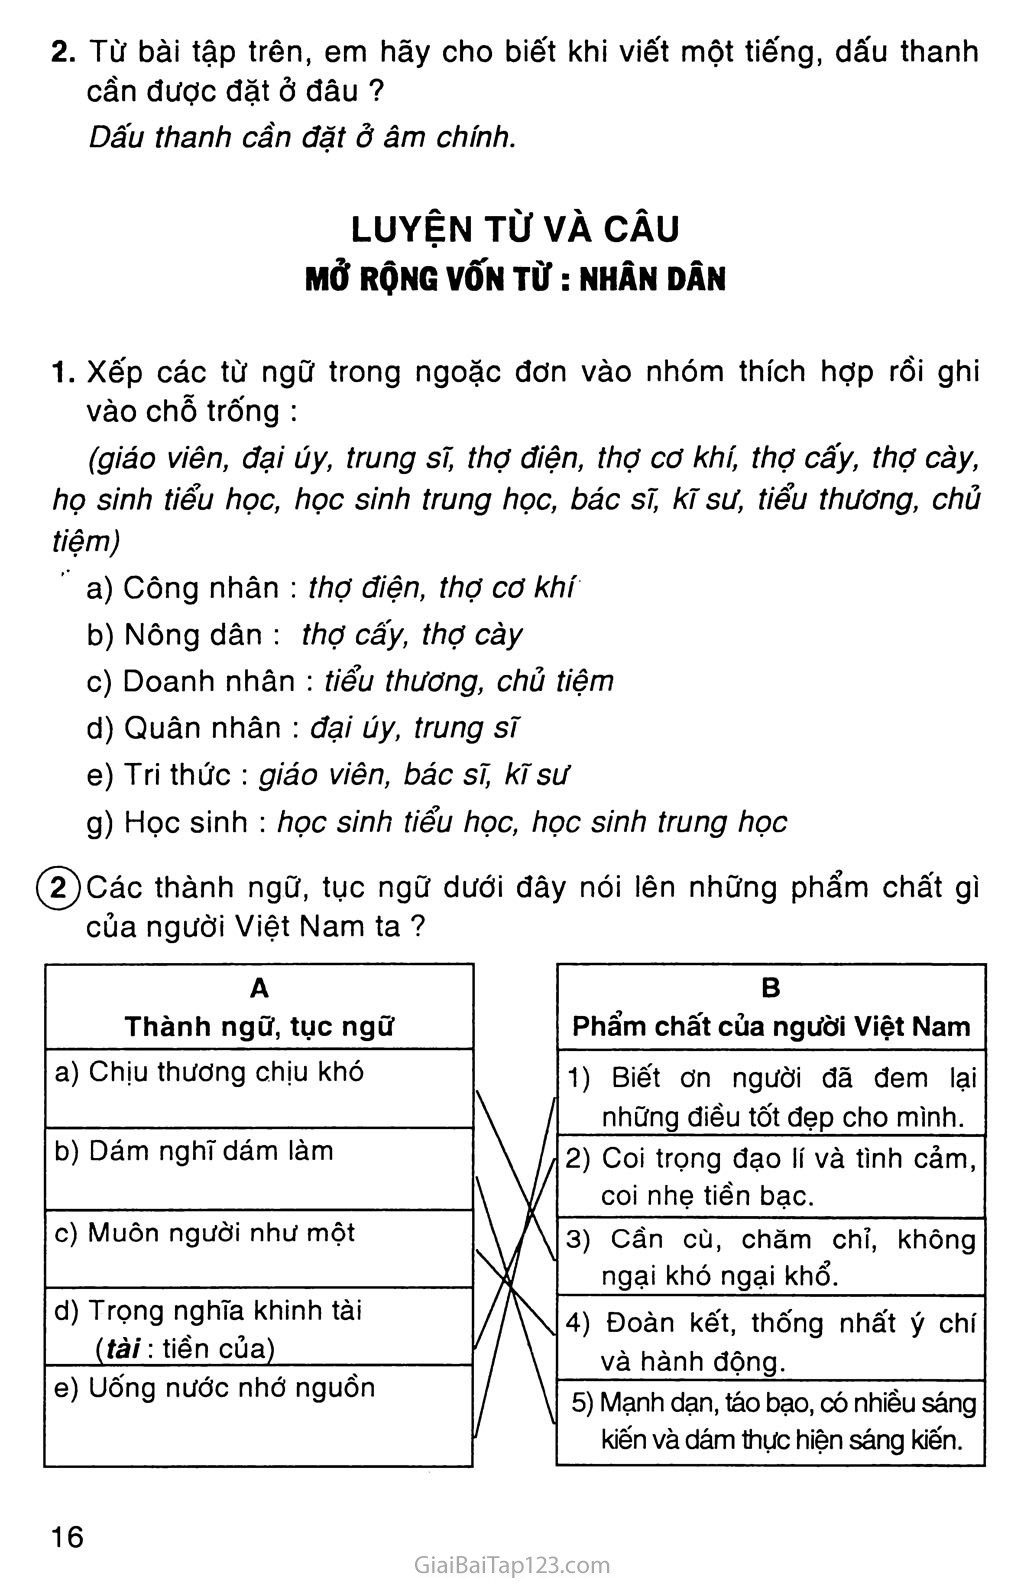 Bạn muốn học tiếng Việt nhưng chưa biết bắt đầu từ đâu? Hãy xem hình ảnh tiếng Việt tuyệt đẹp này. Trong ảnh là một bảng chữ cái và những từ đơn giản để bạn bắt đầu học tiếng Việt dễ dàng hơn. Hãy đến với ảnh và khám phá thế giới tiếng Việt ngay hôm nay.